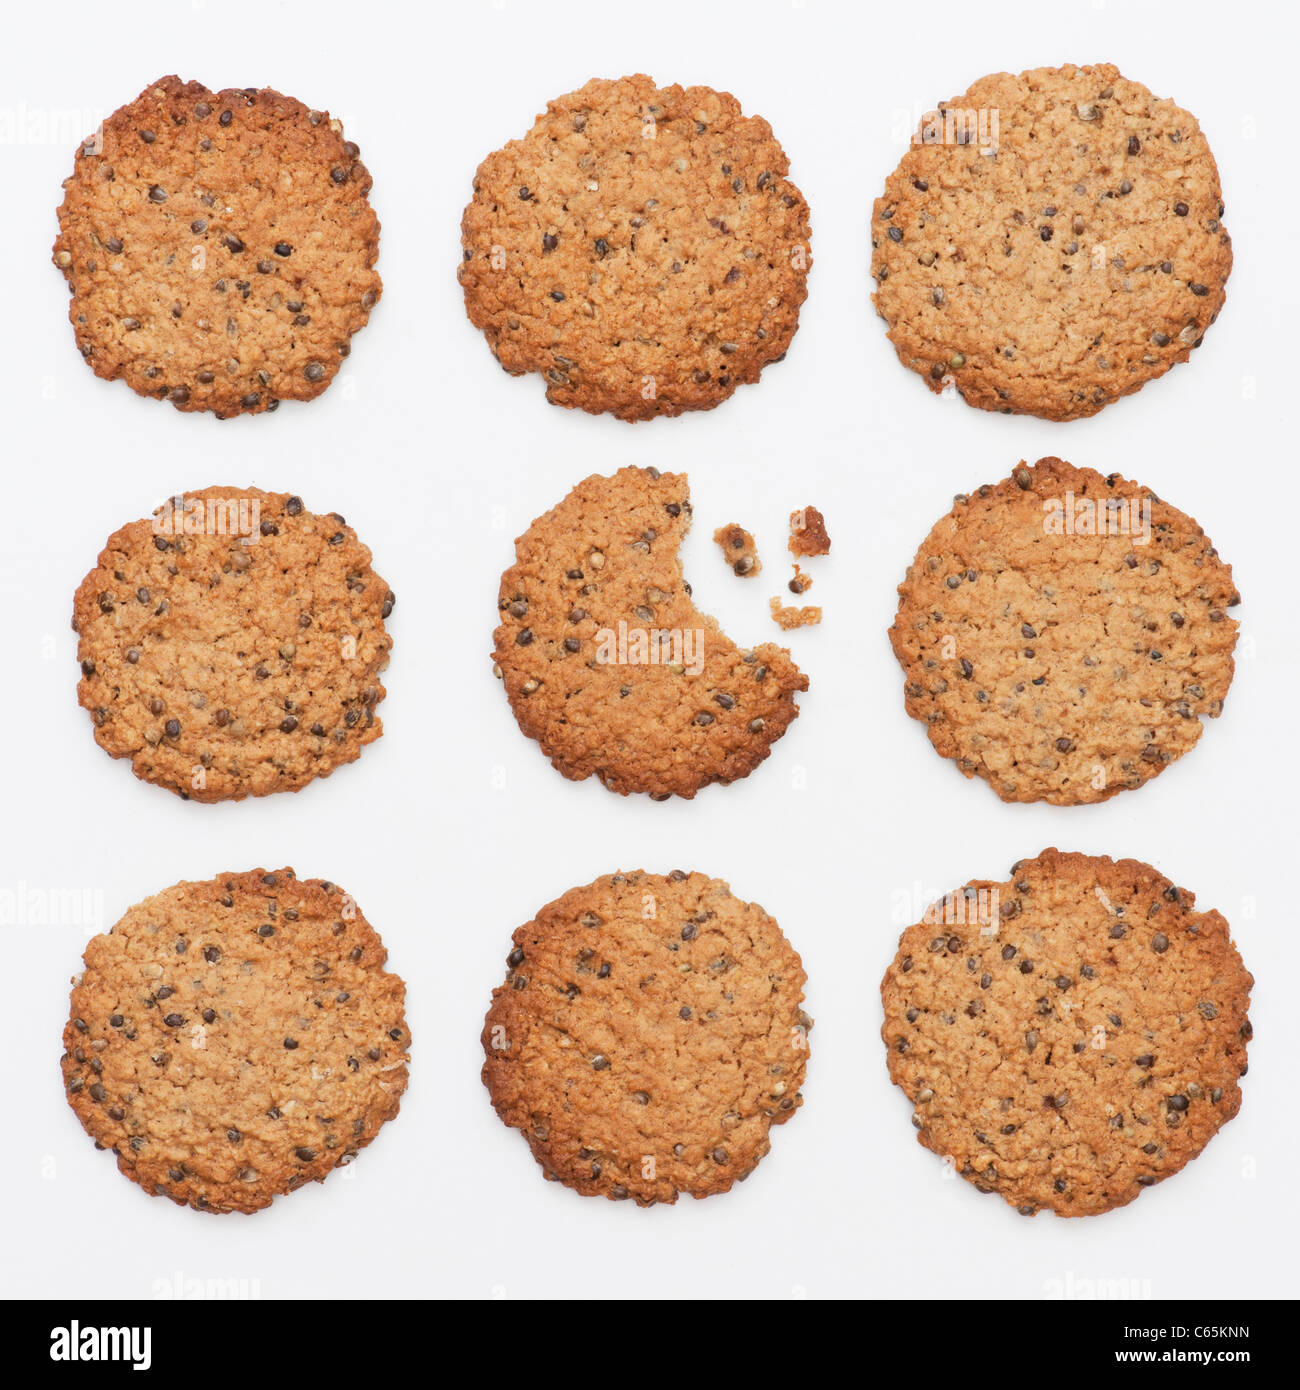 Hanf Samen Cookies. Hausgemachte Kekse mit Hanfsamen auf weißem Hintergrund Stockfoto